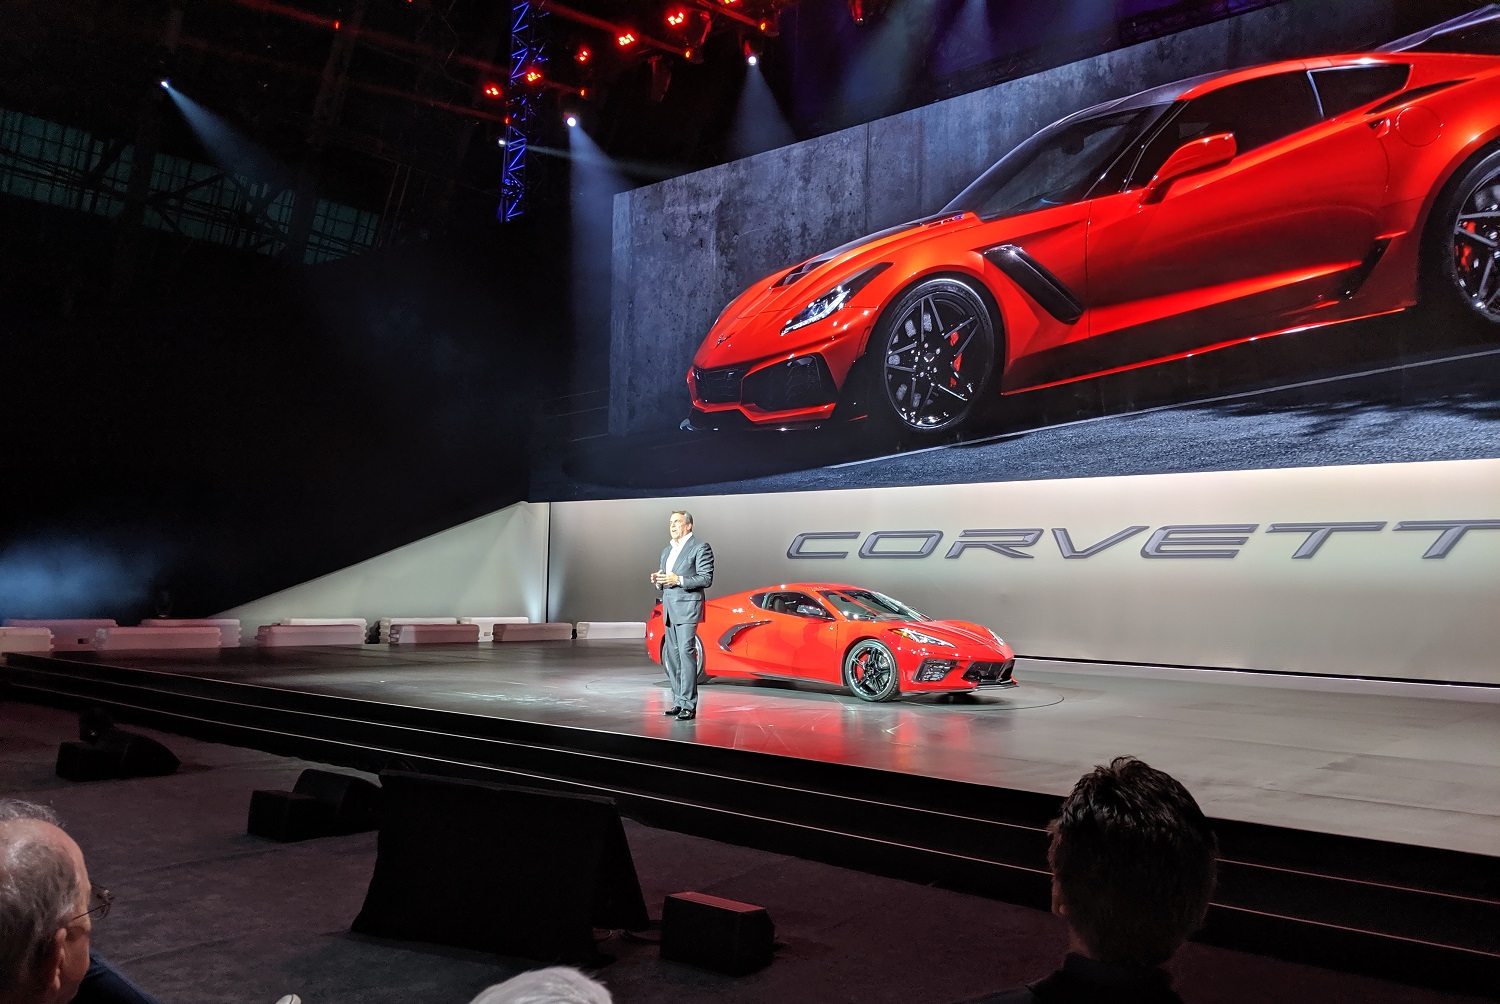 Le logo Corvette : présentation et signification.